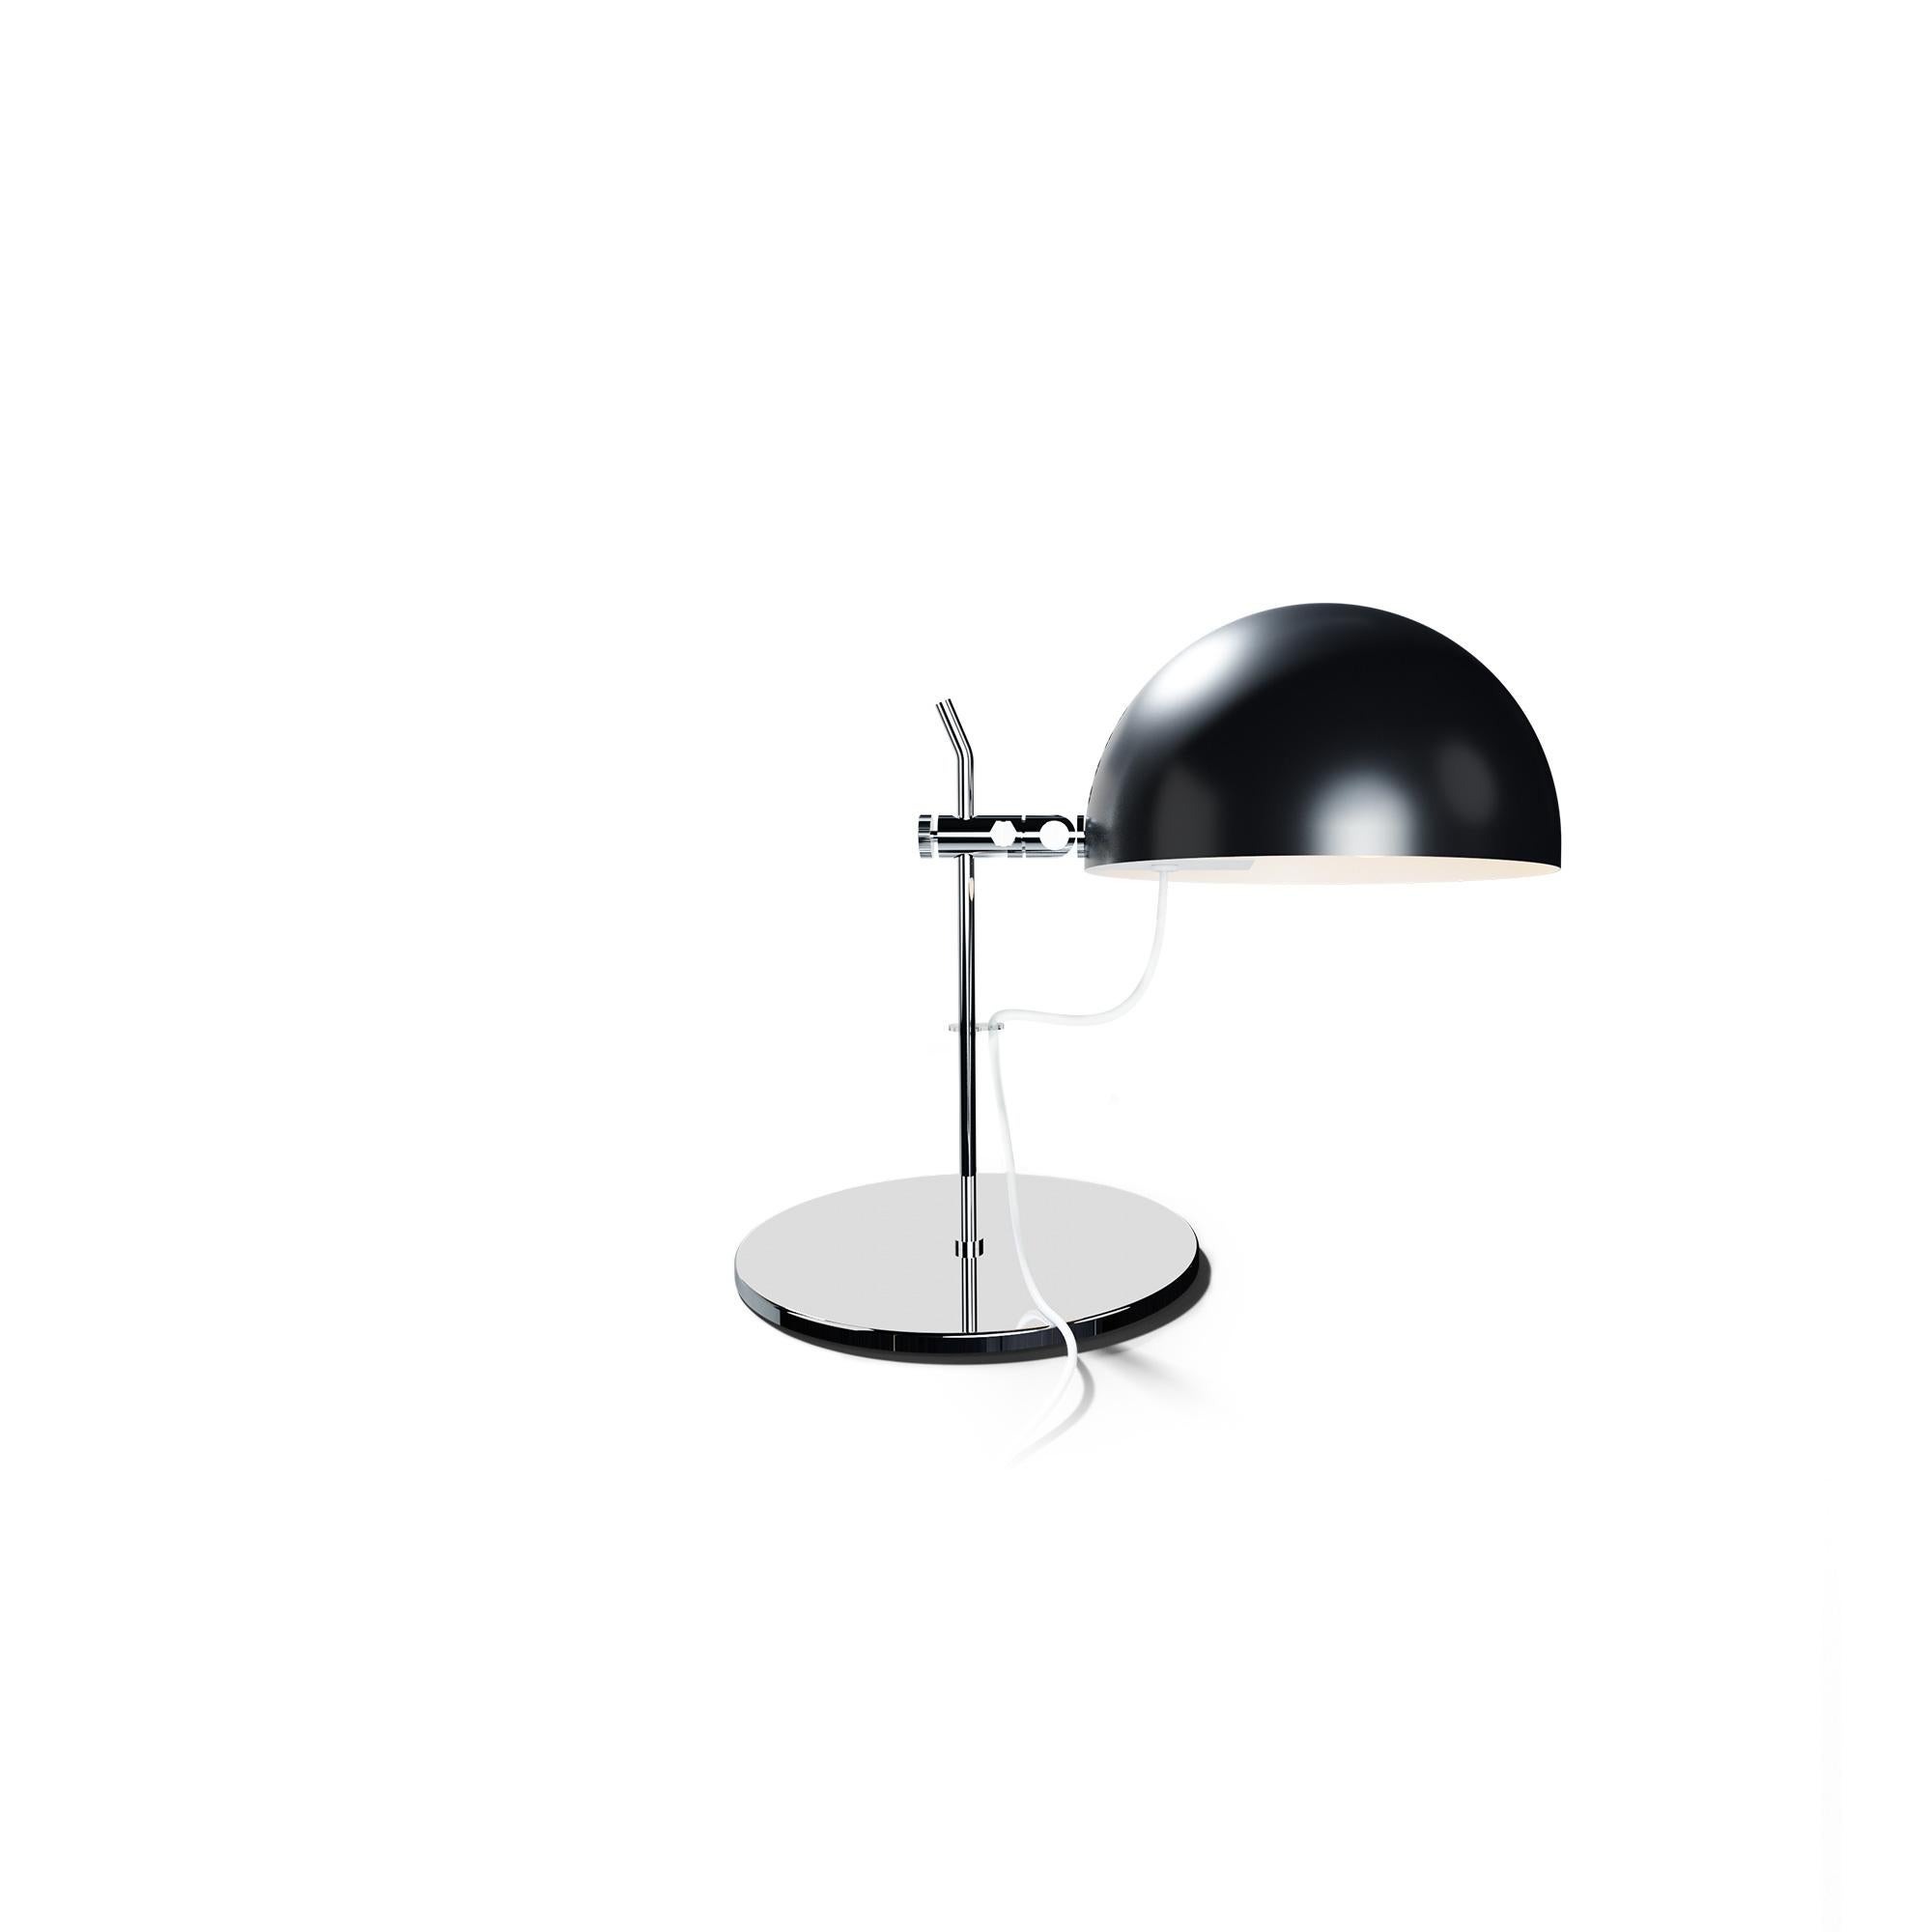 Alain Richard 'A22f' Task Lamp in White for Disderot For Sale 7